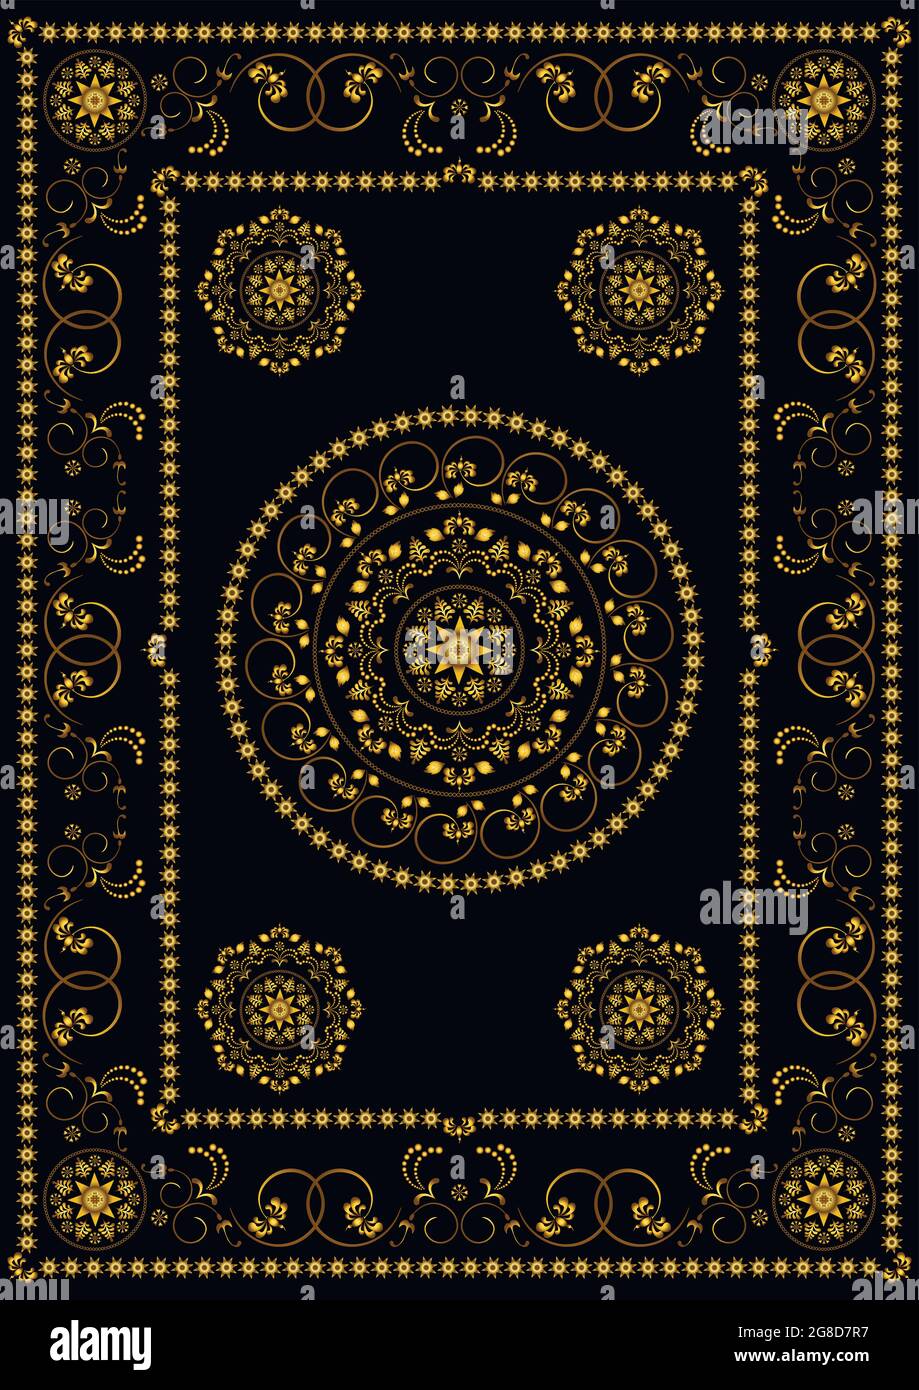 Rahmen aus Vintage-Gold mit floralem kalligraphischem Ornament im orientalischen Stil auf weißem Hintergrund Stock Vektor